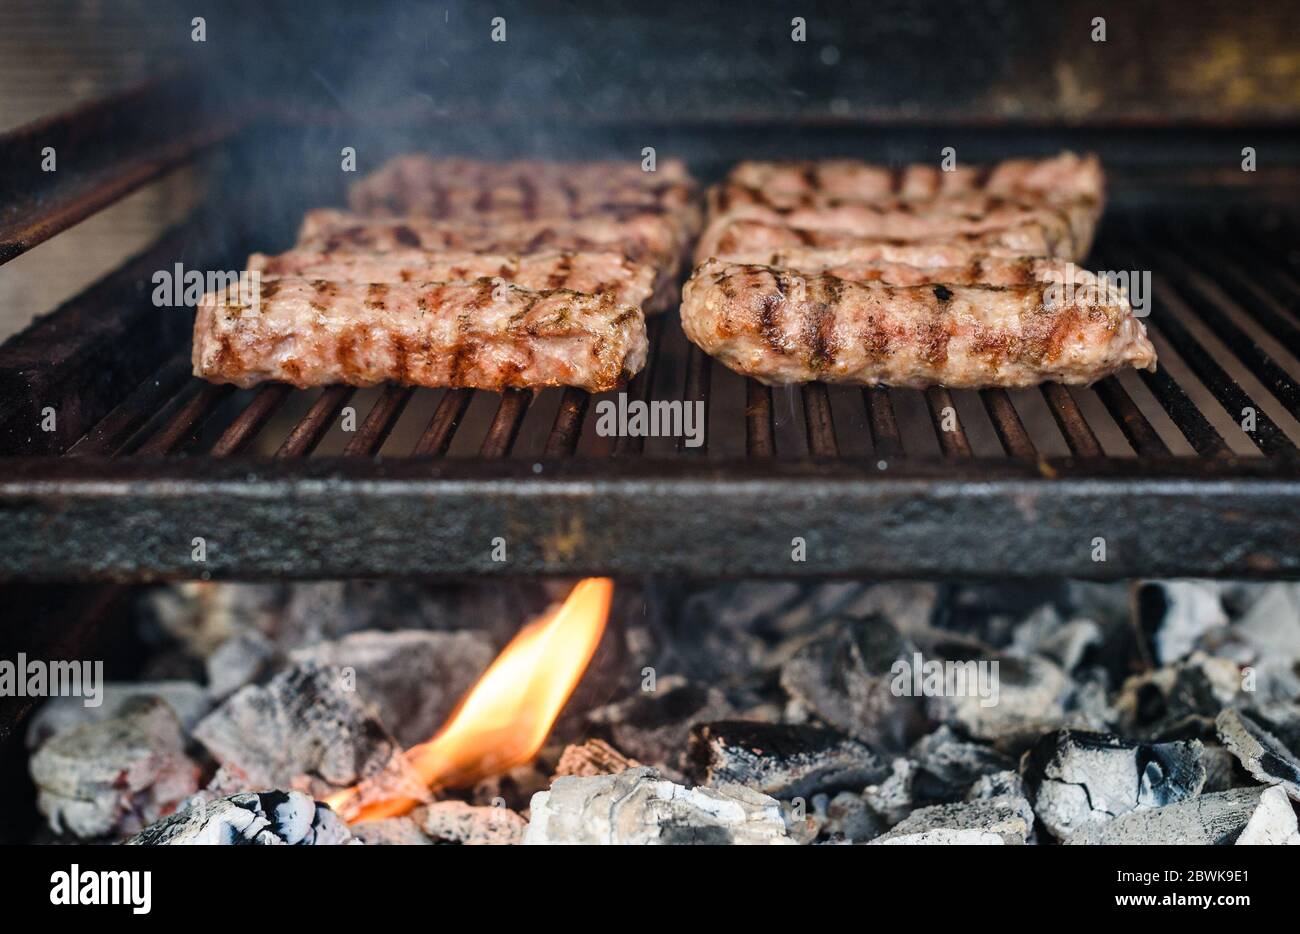 Griller de la viande sur un barbecue au charbon chaud. Préparation, cuisson de cafevcici, kebabs, saucisse de campagne sur barbecue au charbon de bois dans la cheminée extérieure. Tr Banque D'Images